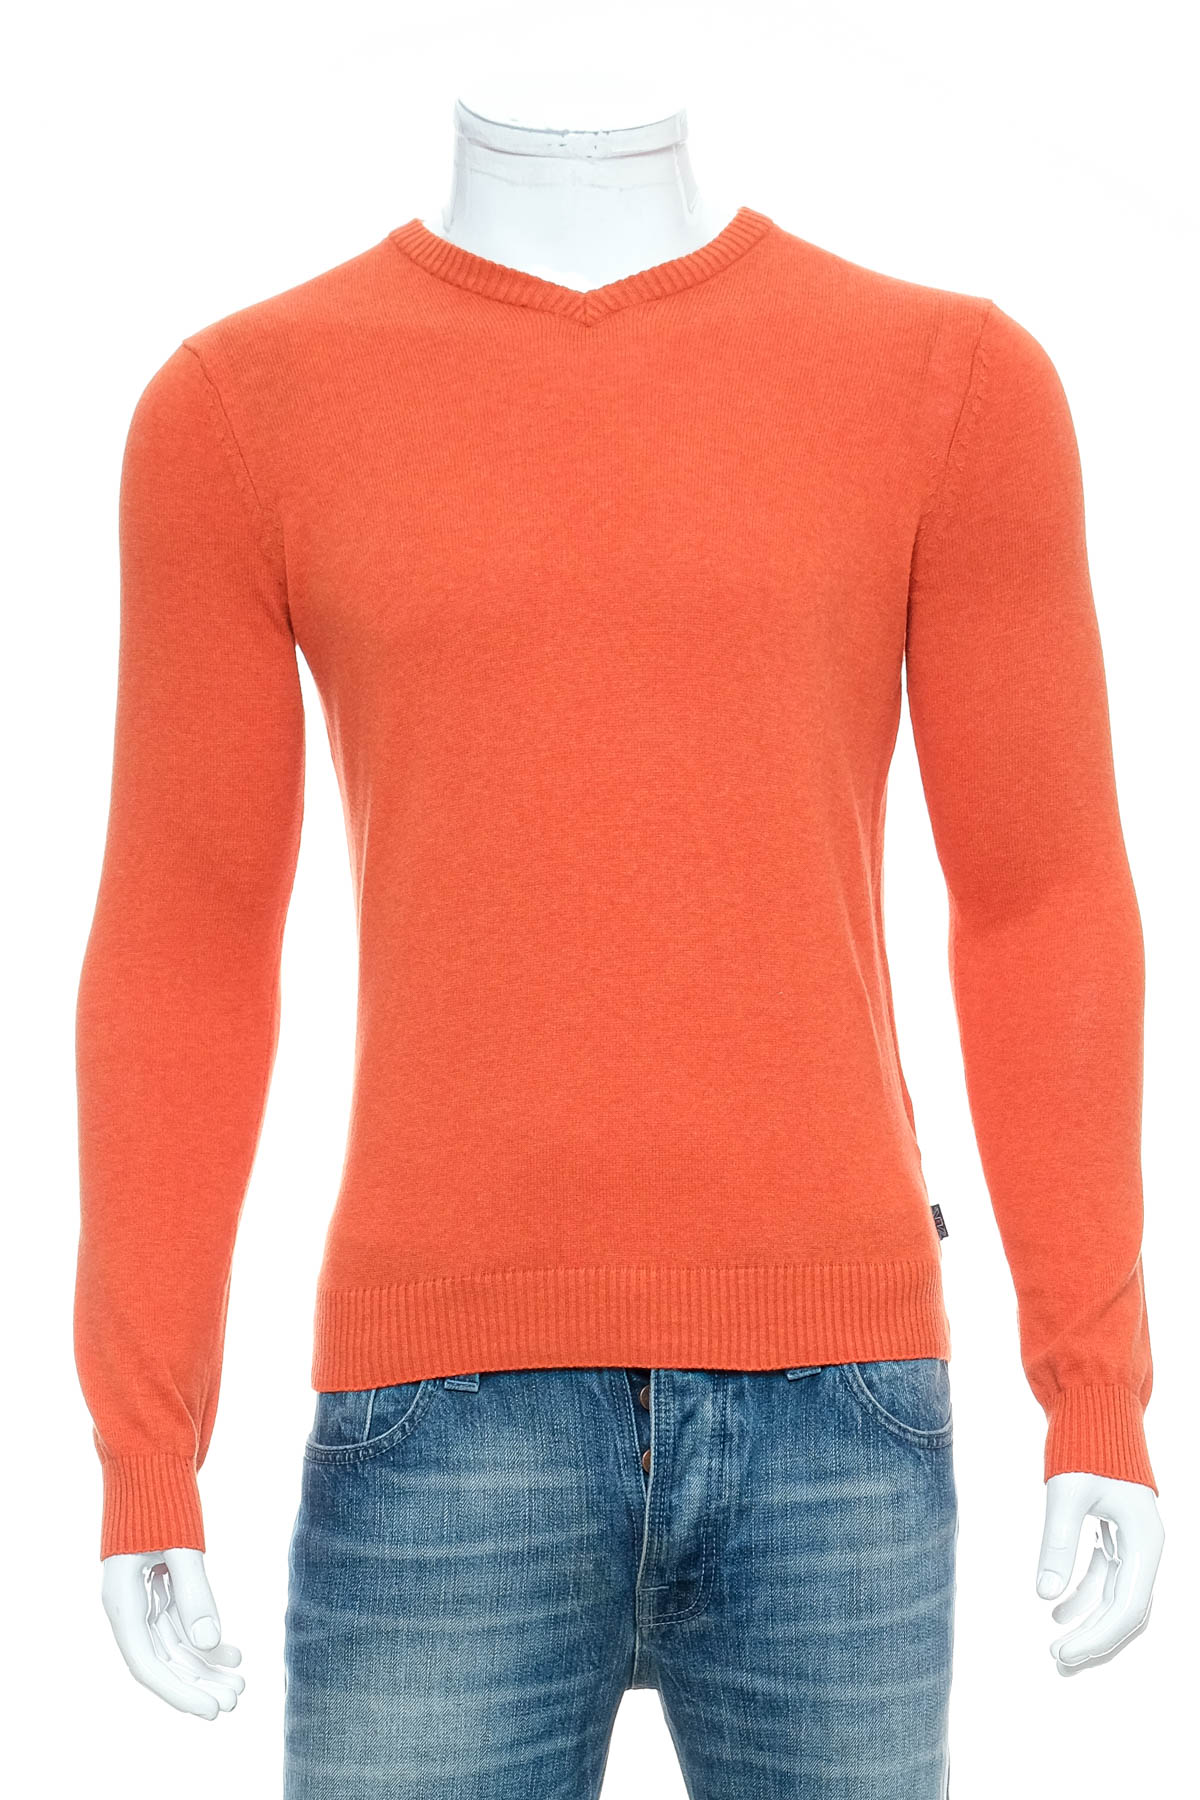 Men's sweater - Lee Cooper - 0